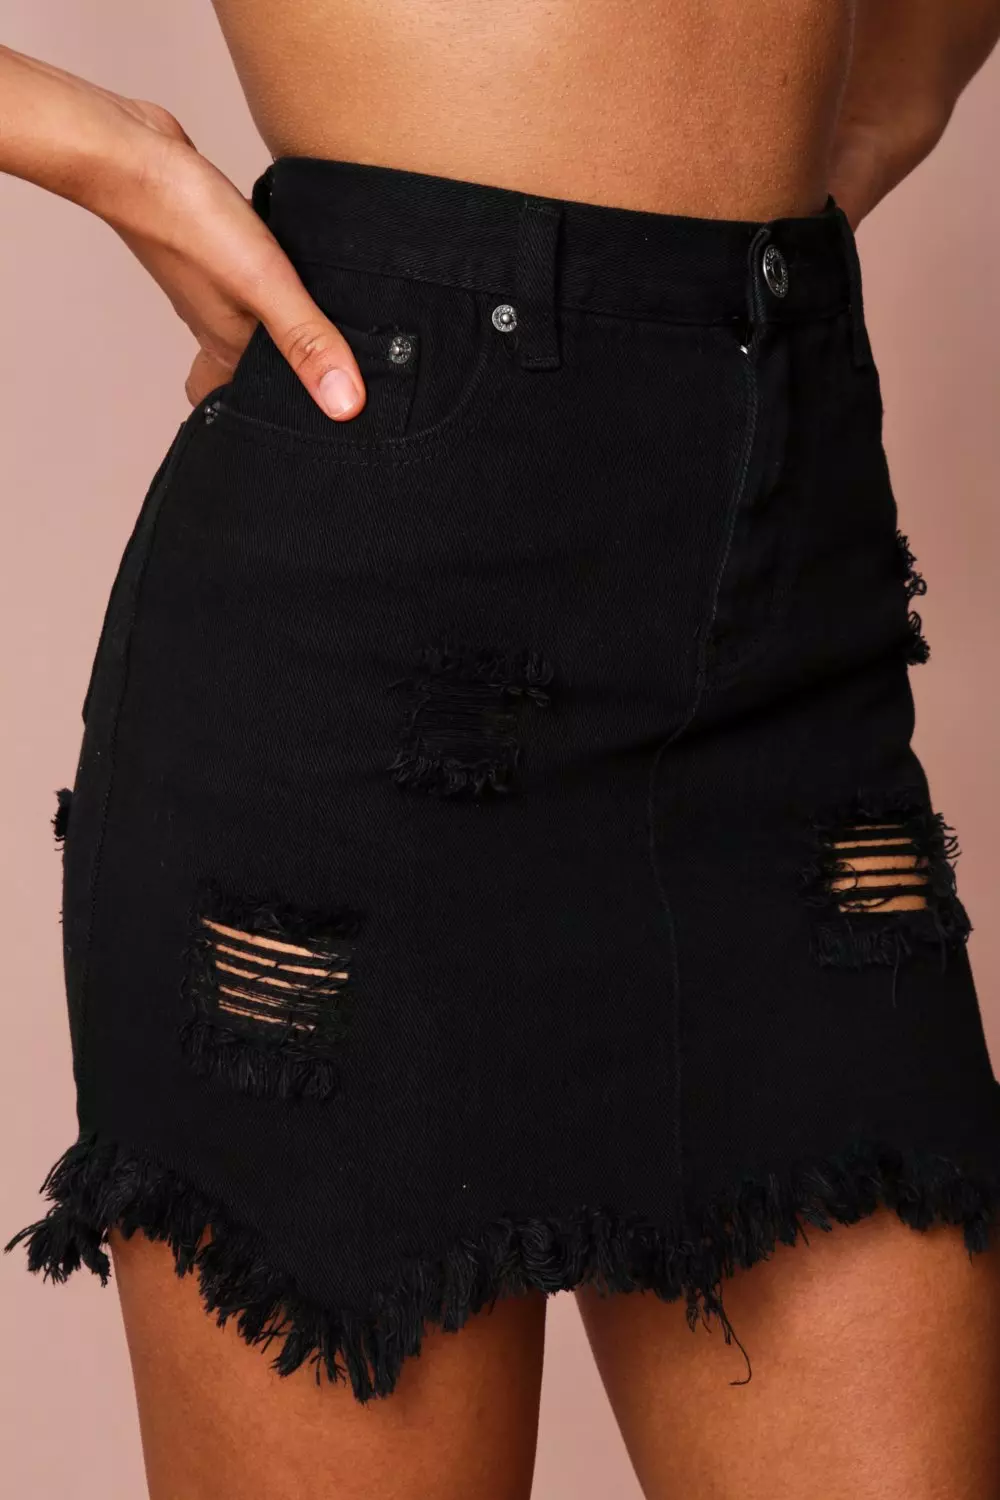 Black Denim Skirt Frayed | vlr.eng.br